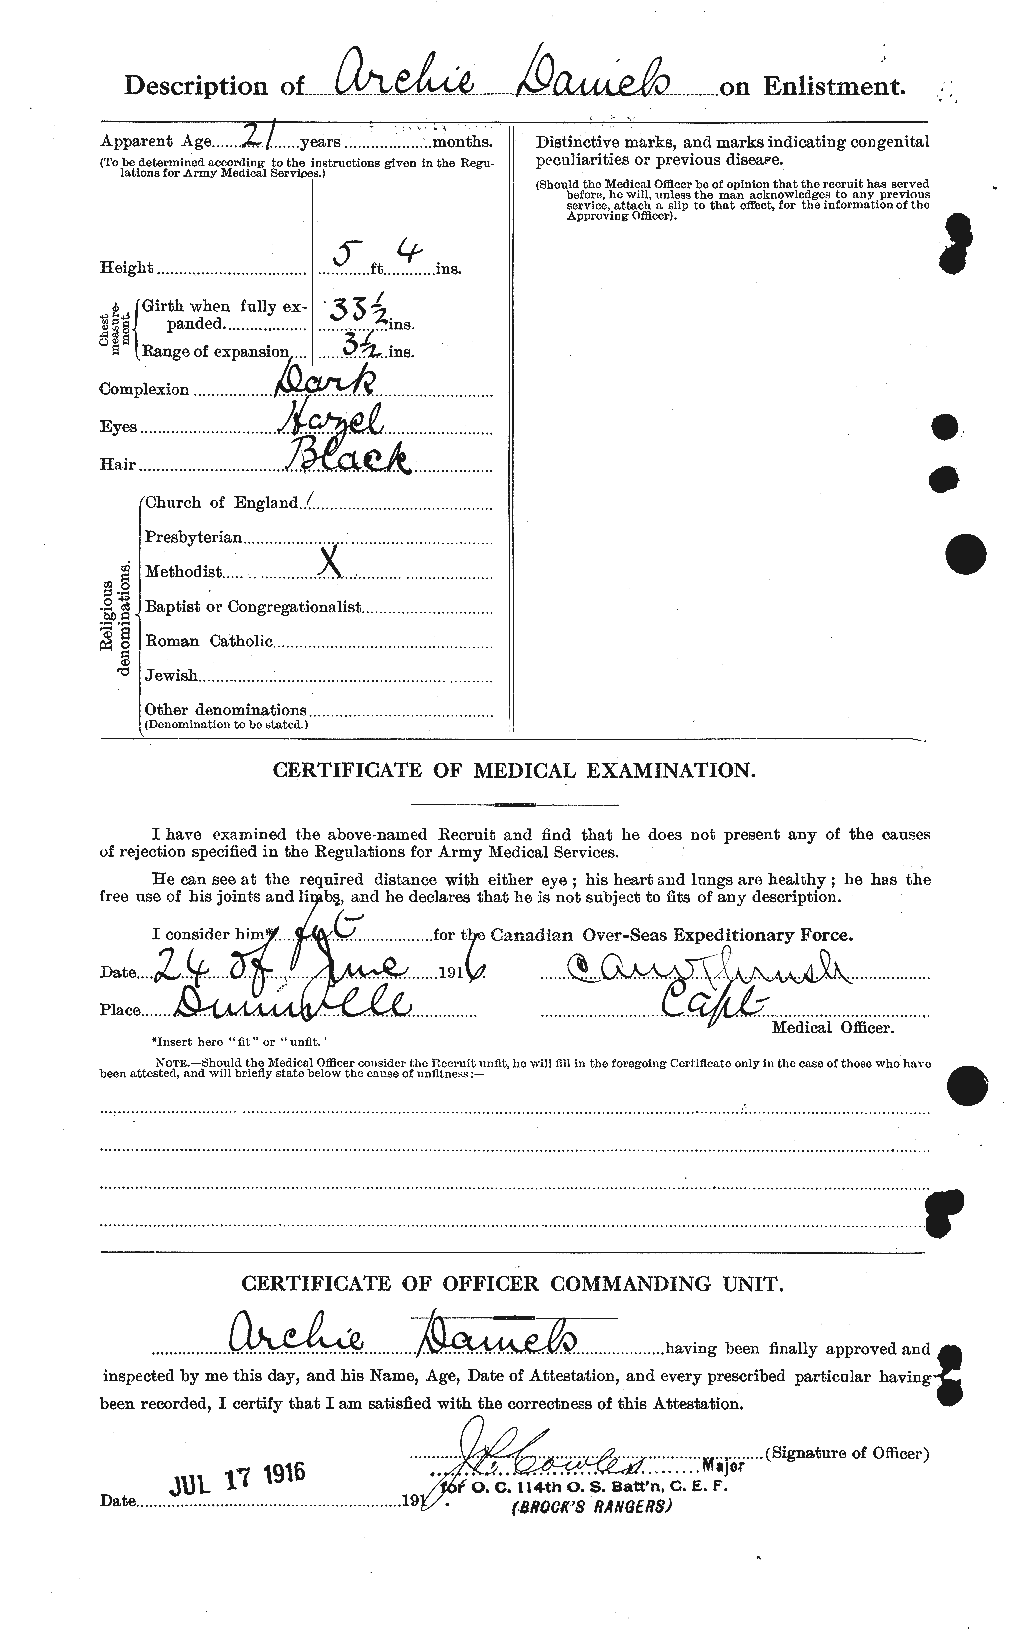 Dossiers du Personnel de la Première Guerre mondiale - CEC 279568b